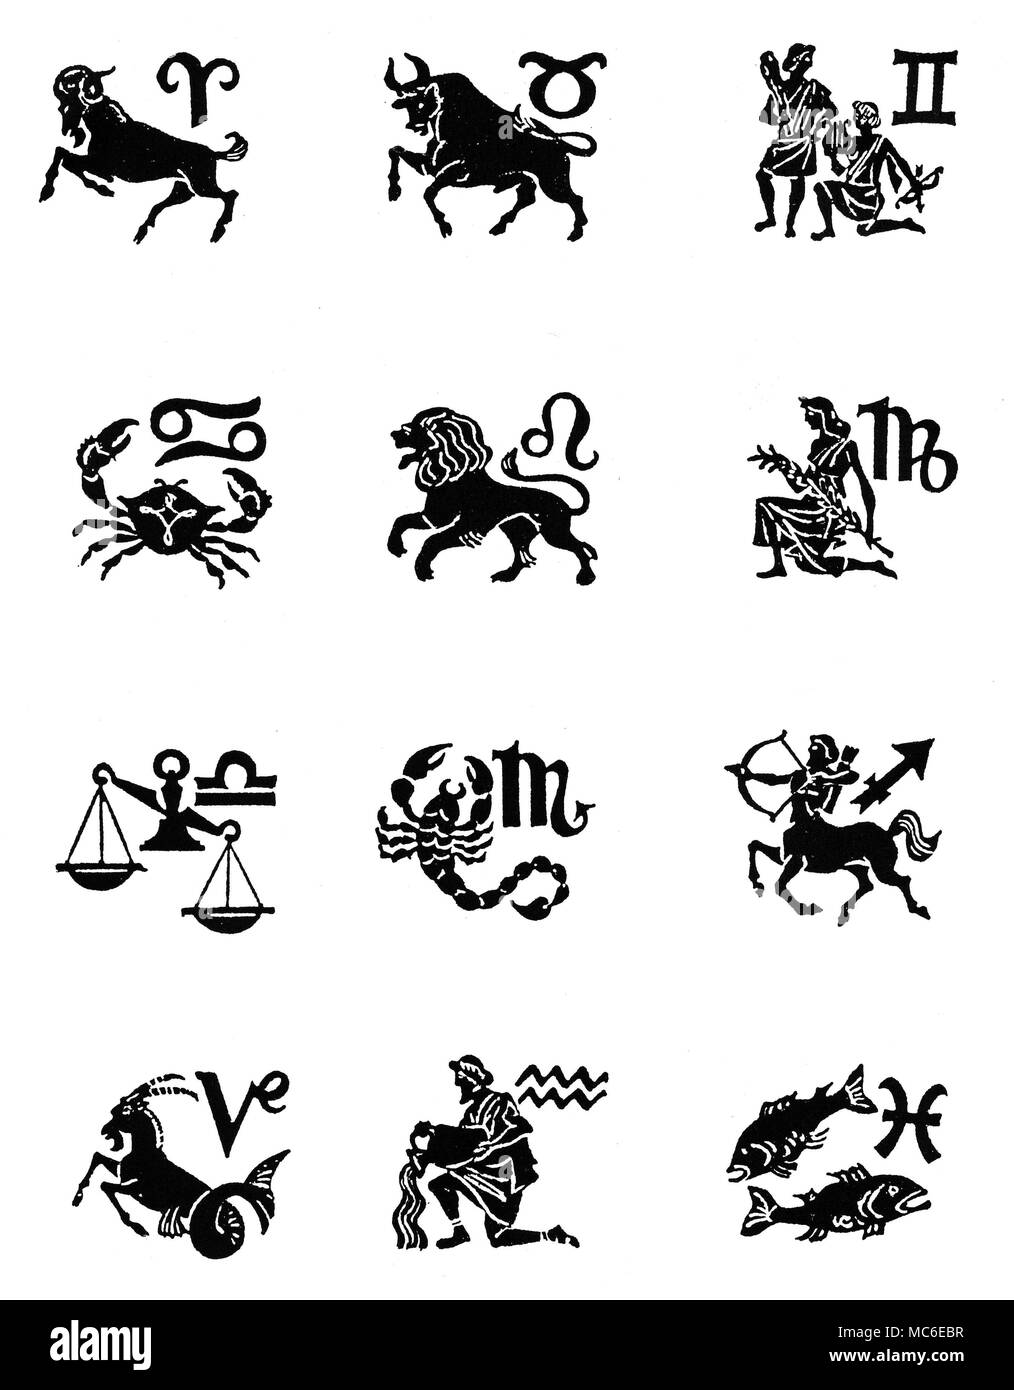 ZODIACS - dodici segni dello zodiaco di dodici immagini, con corrispondenti sigils, disposte in quattro registri (top) Ariete, Toro, Gemelli, (seconda riga) cancro, leone, vergine (terza riga), Libra, Scoprio, Sagittario, e (quarta fila), capricorno, acquario e pesci. Progettato circa 1920. Foto Stock